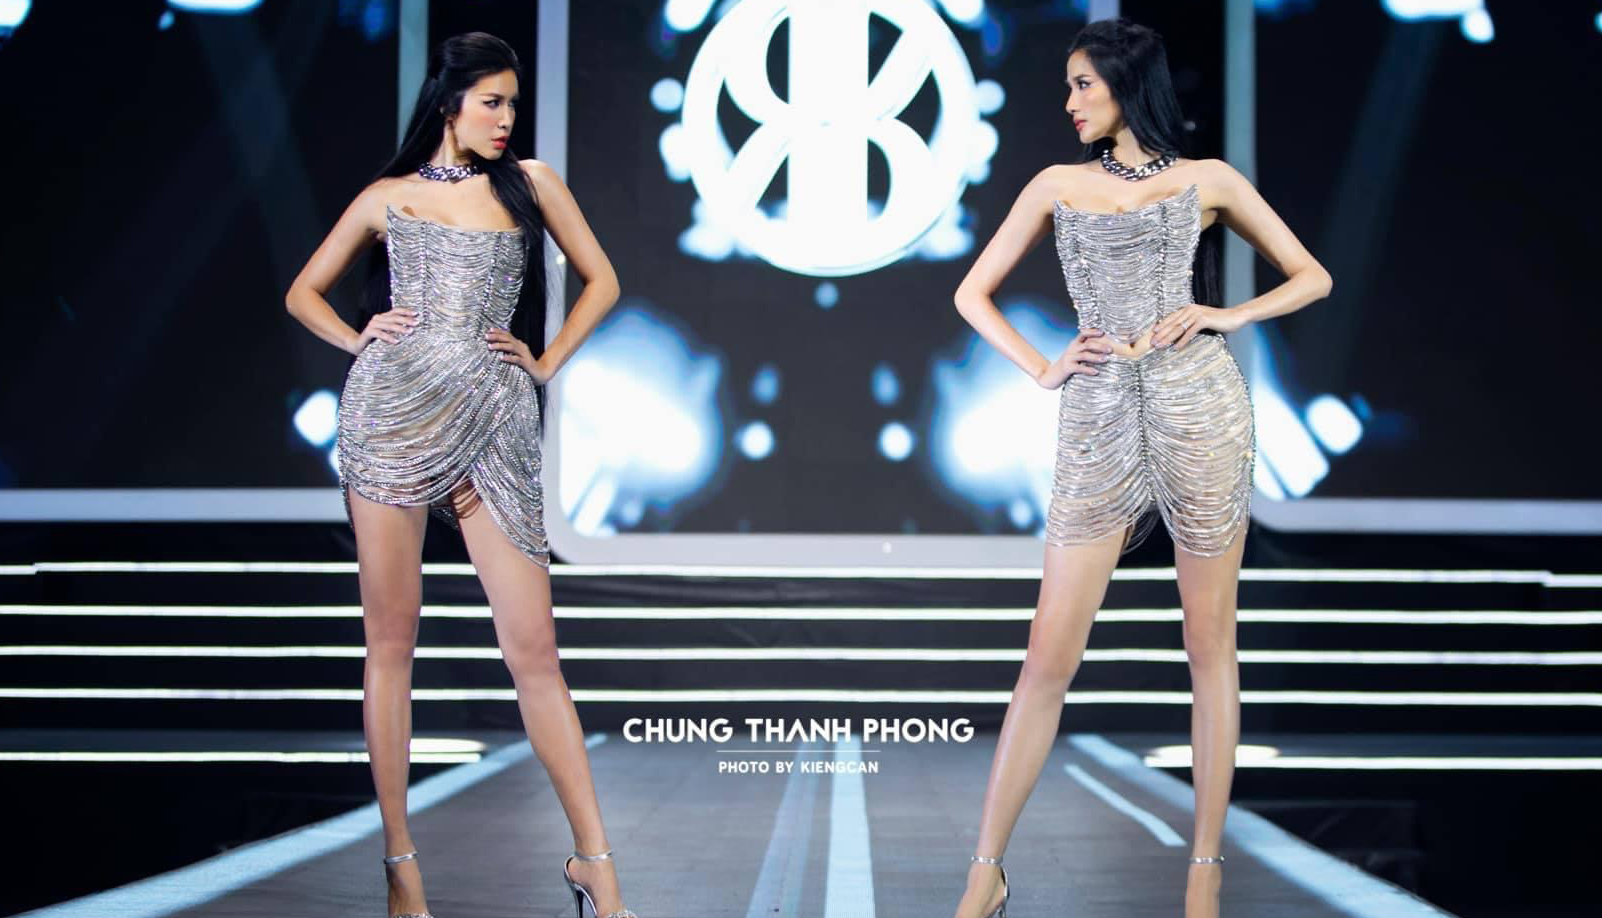 Minh Tú và Hoàng Thuỳ cùng trở thành nàng thơ trong BST mới nhất của nhà thiết kế Chung Thanh Phong. 